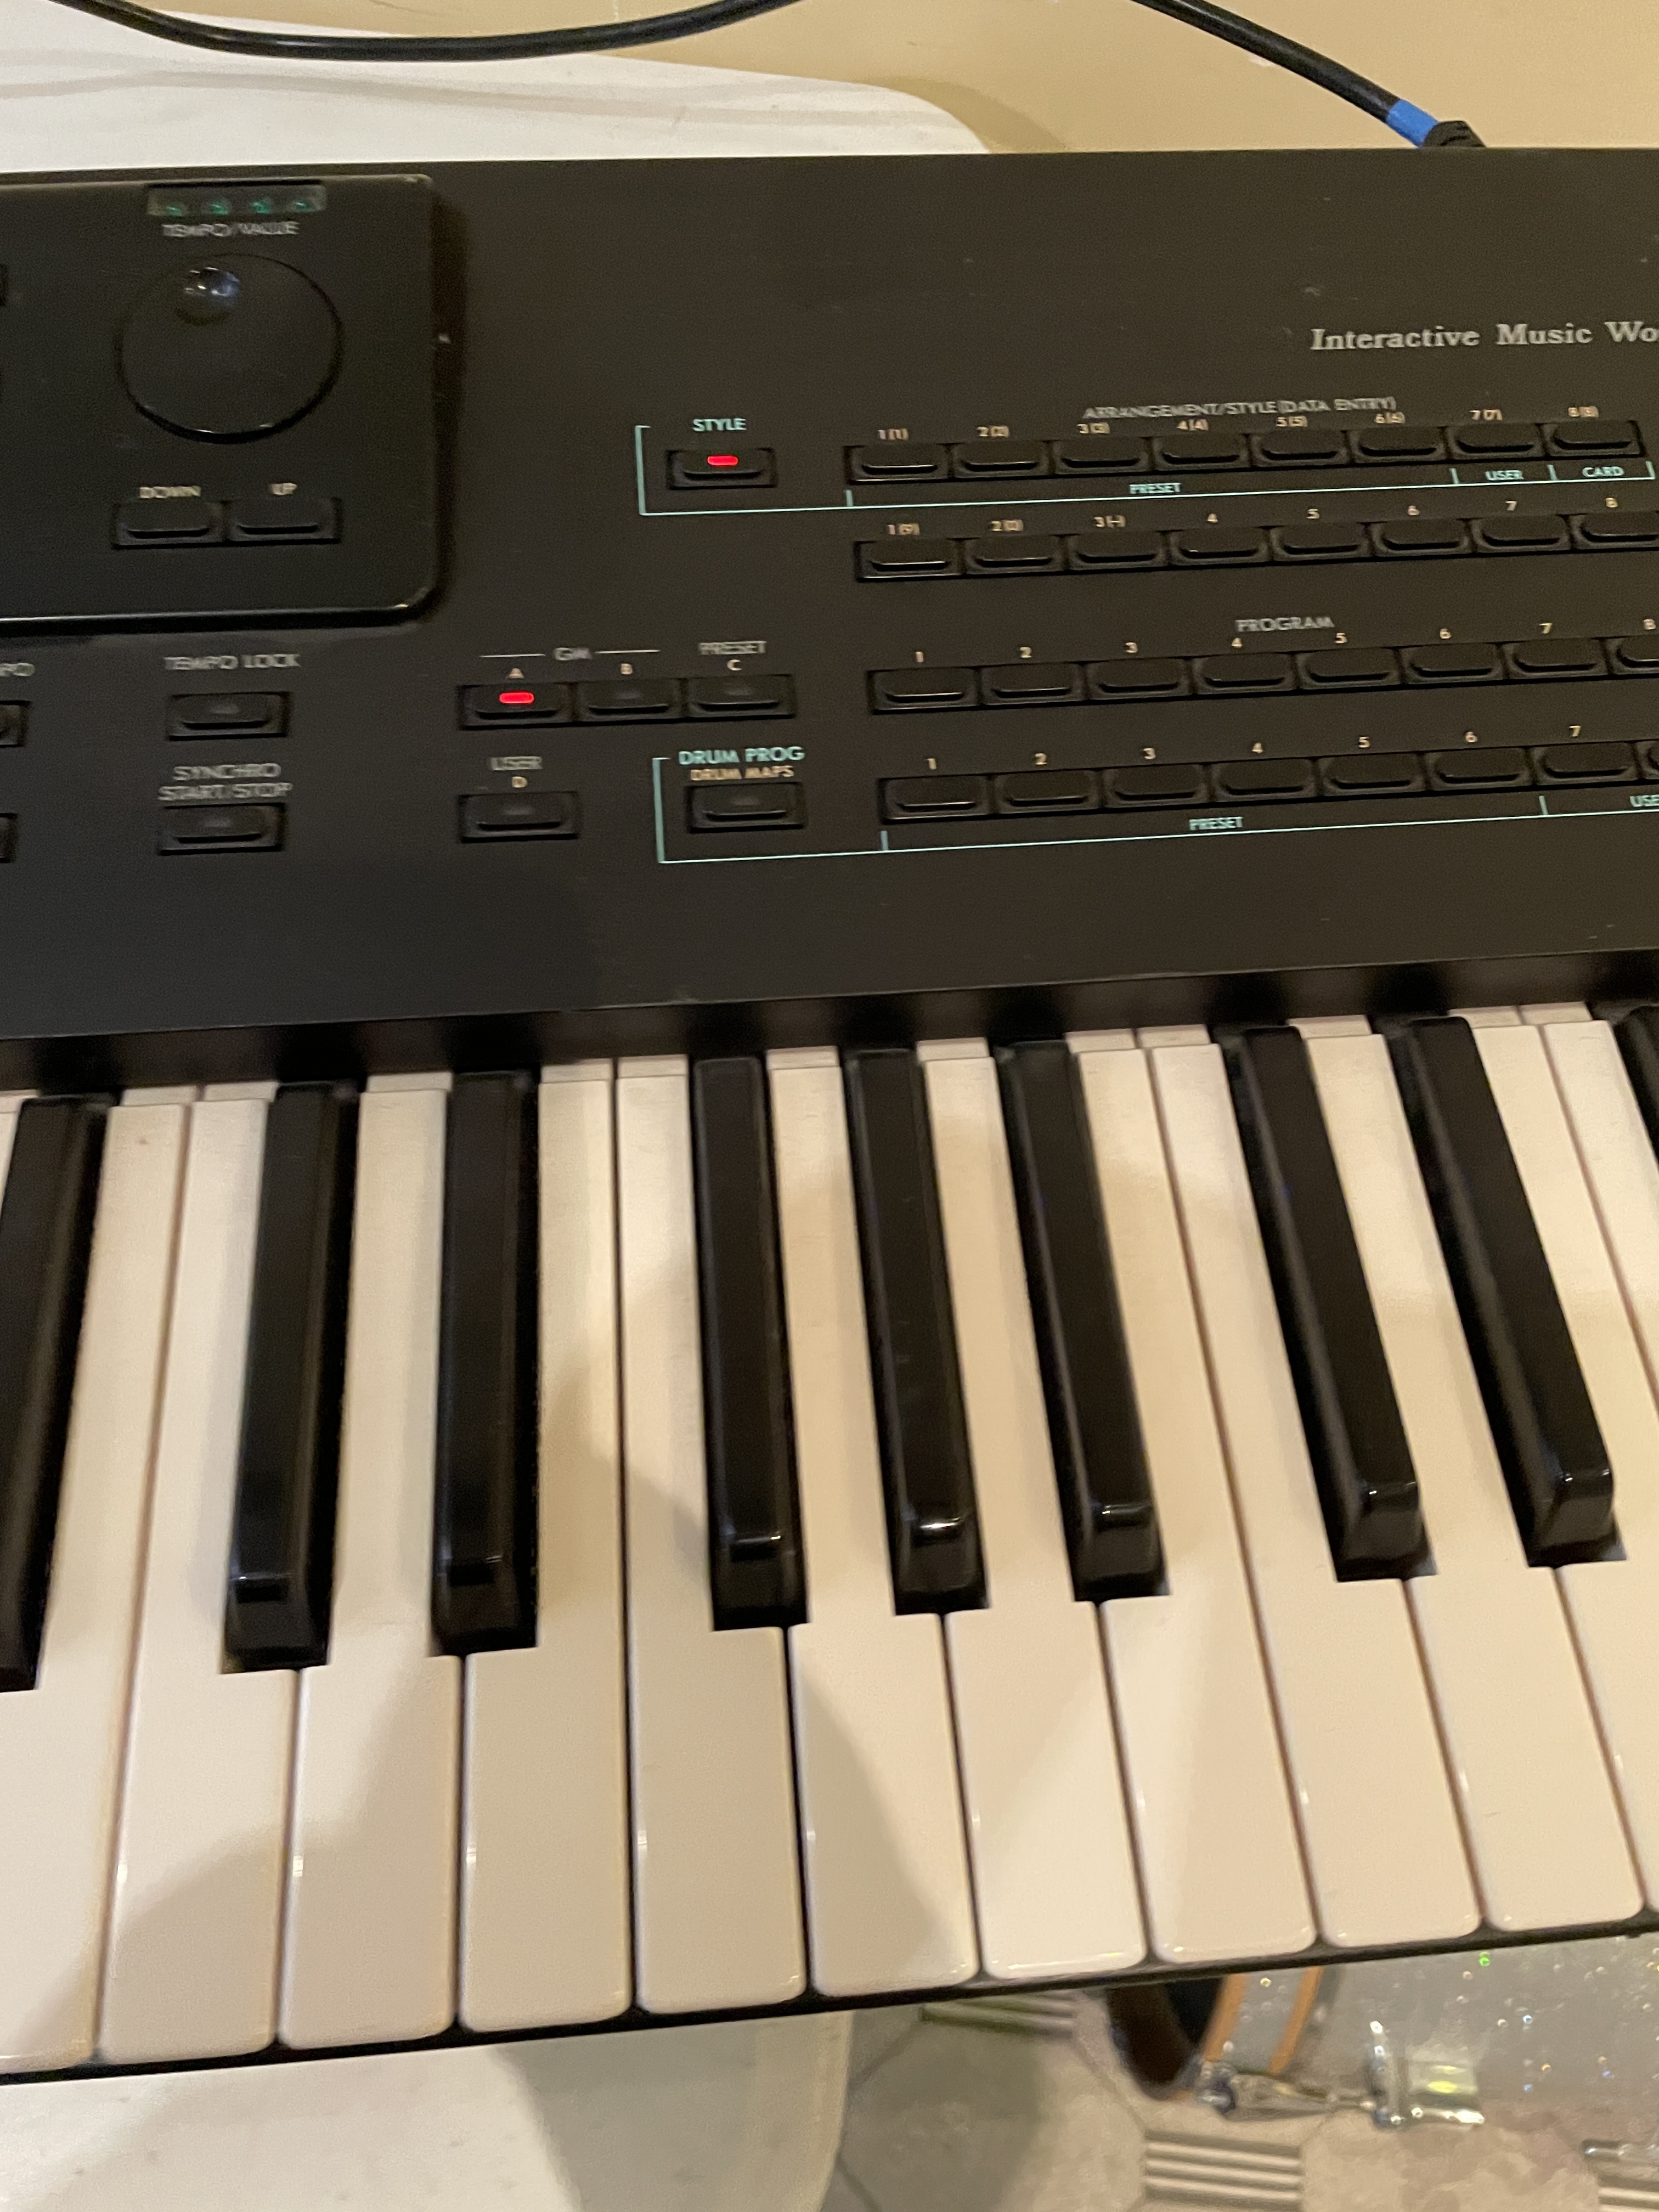 Korg i3 S « Keyboard